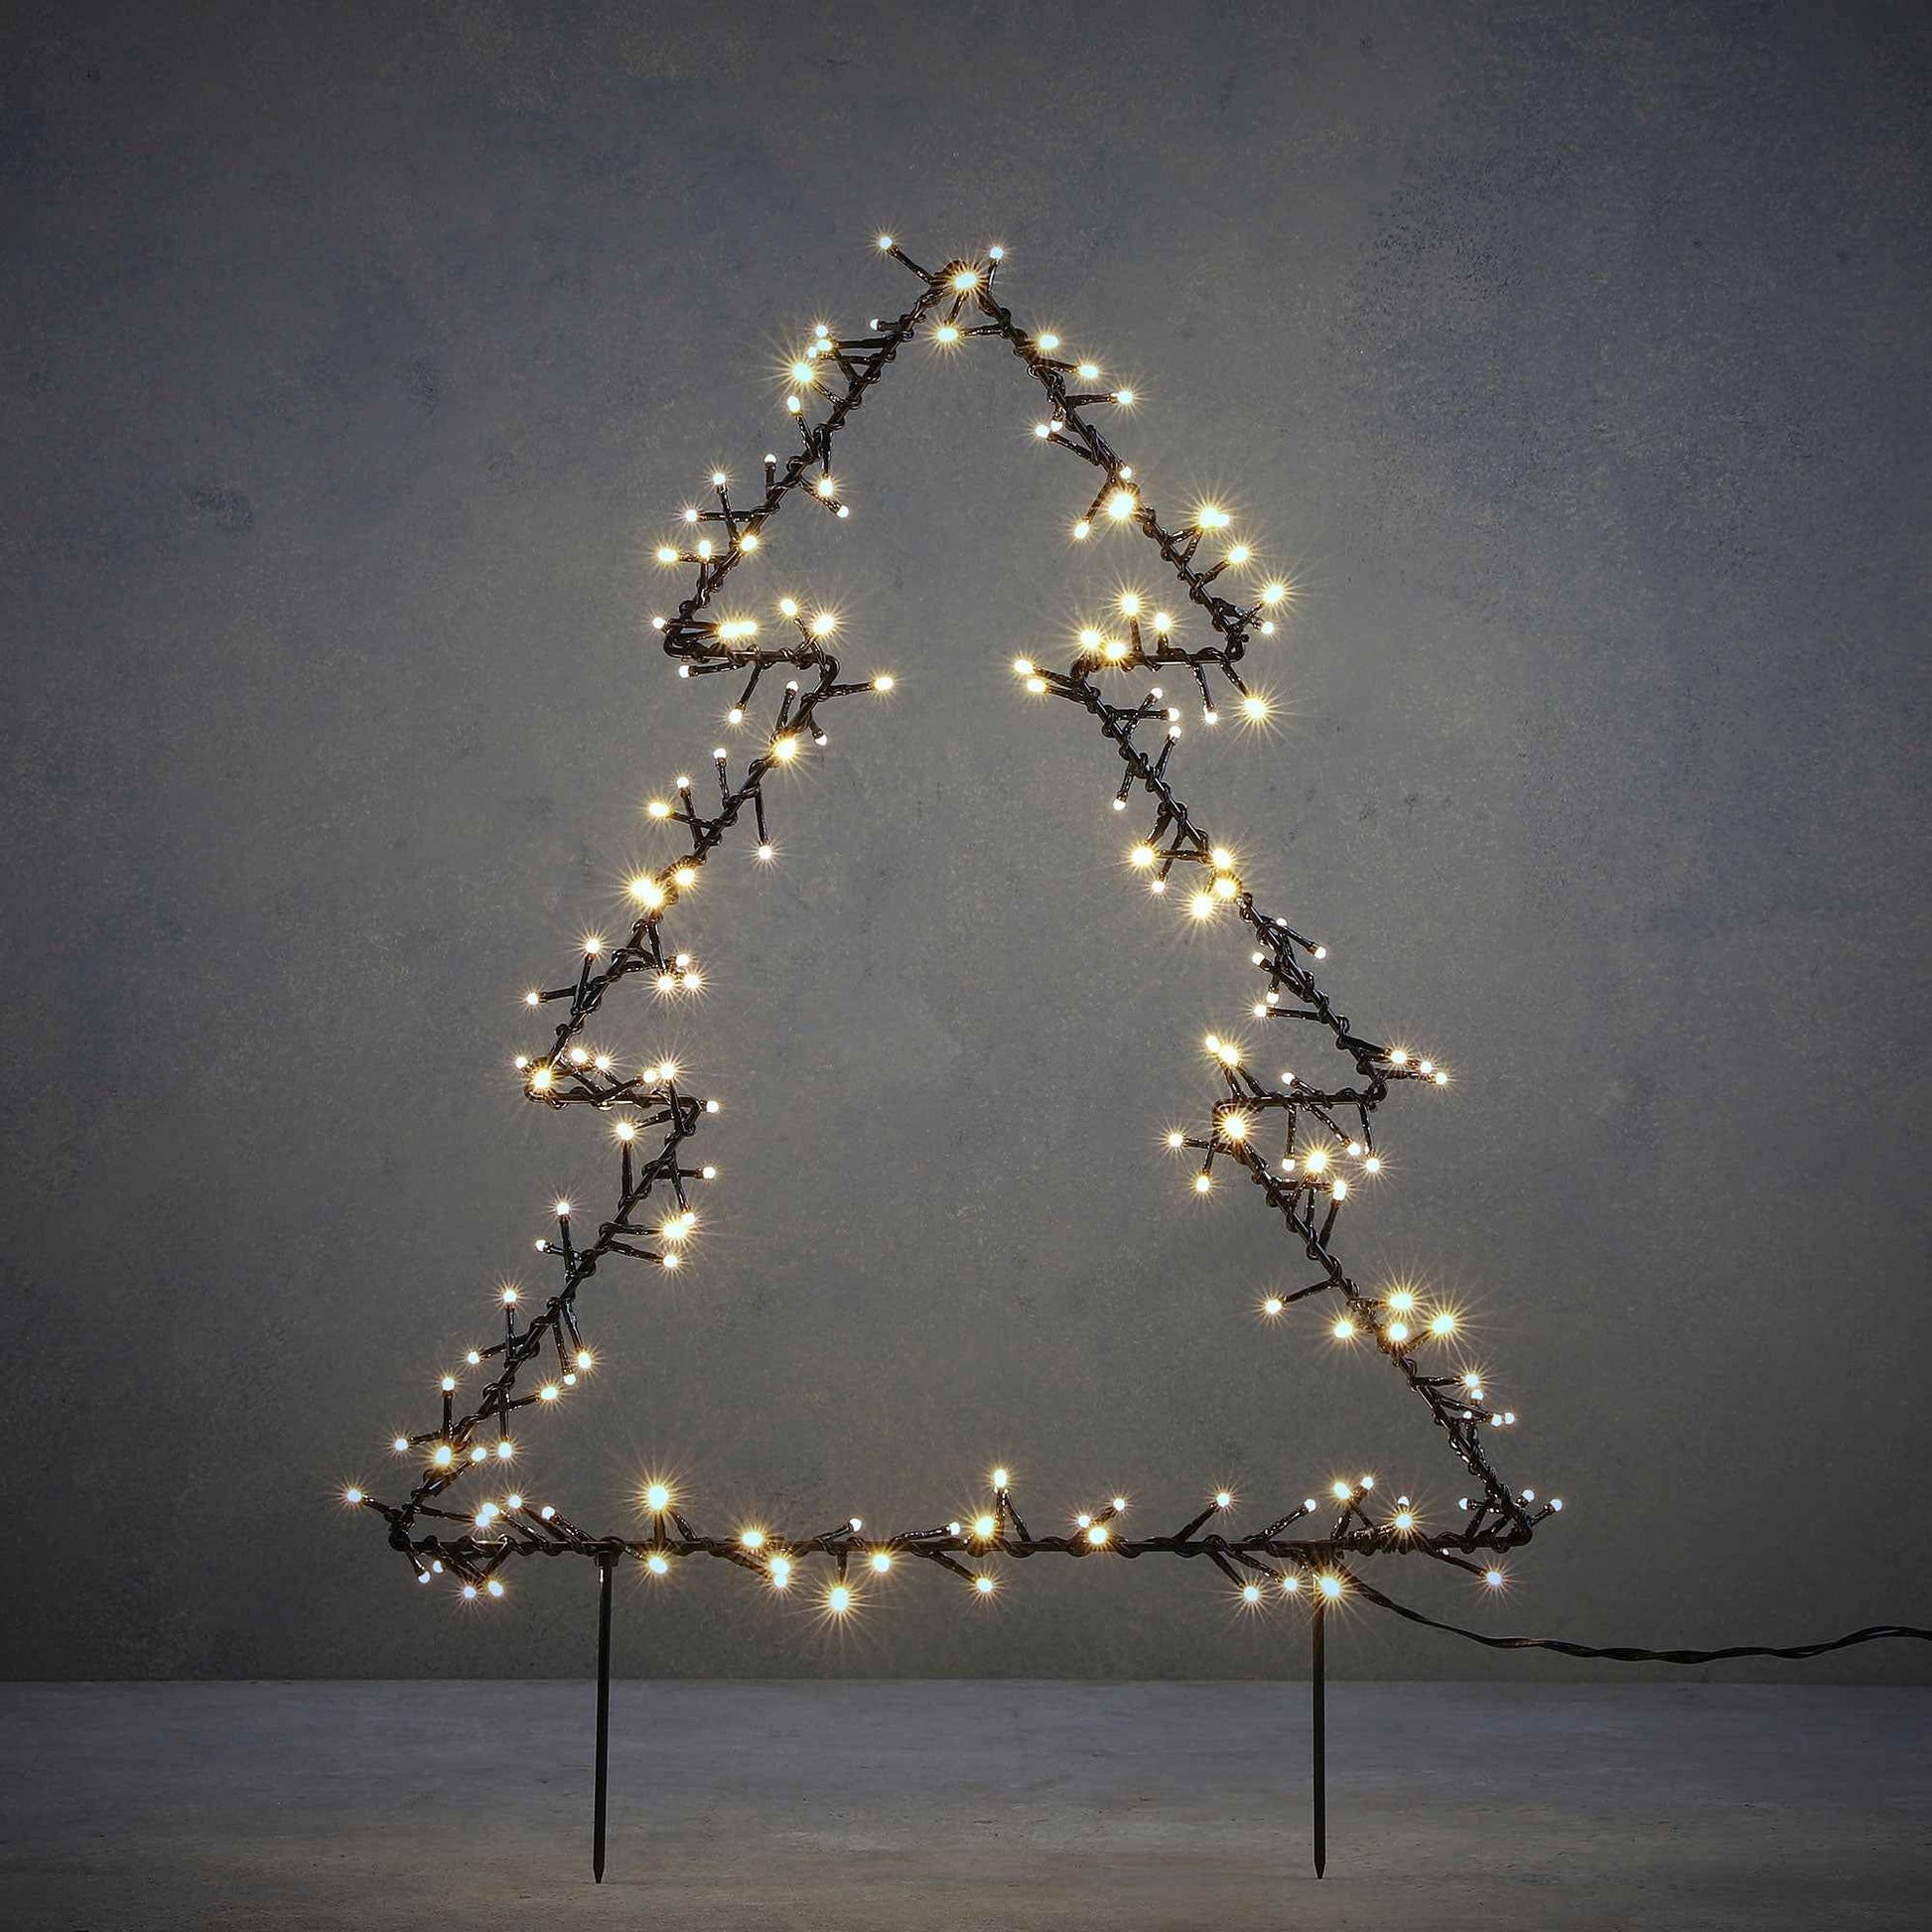 Baumförmige Gartendeko inkl. LED-Beleuchtung - Weihnachtsbeleuchtung